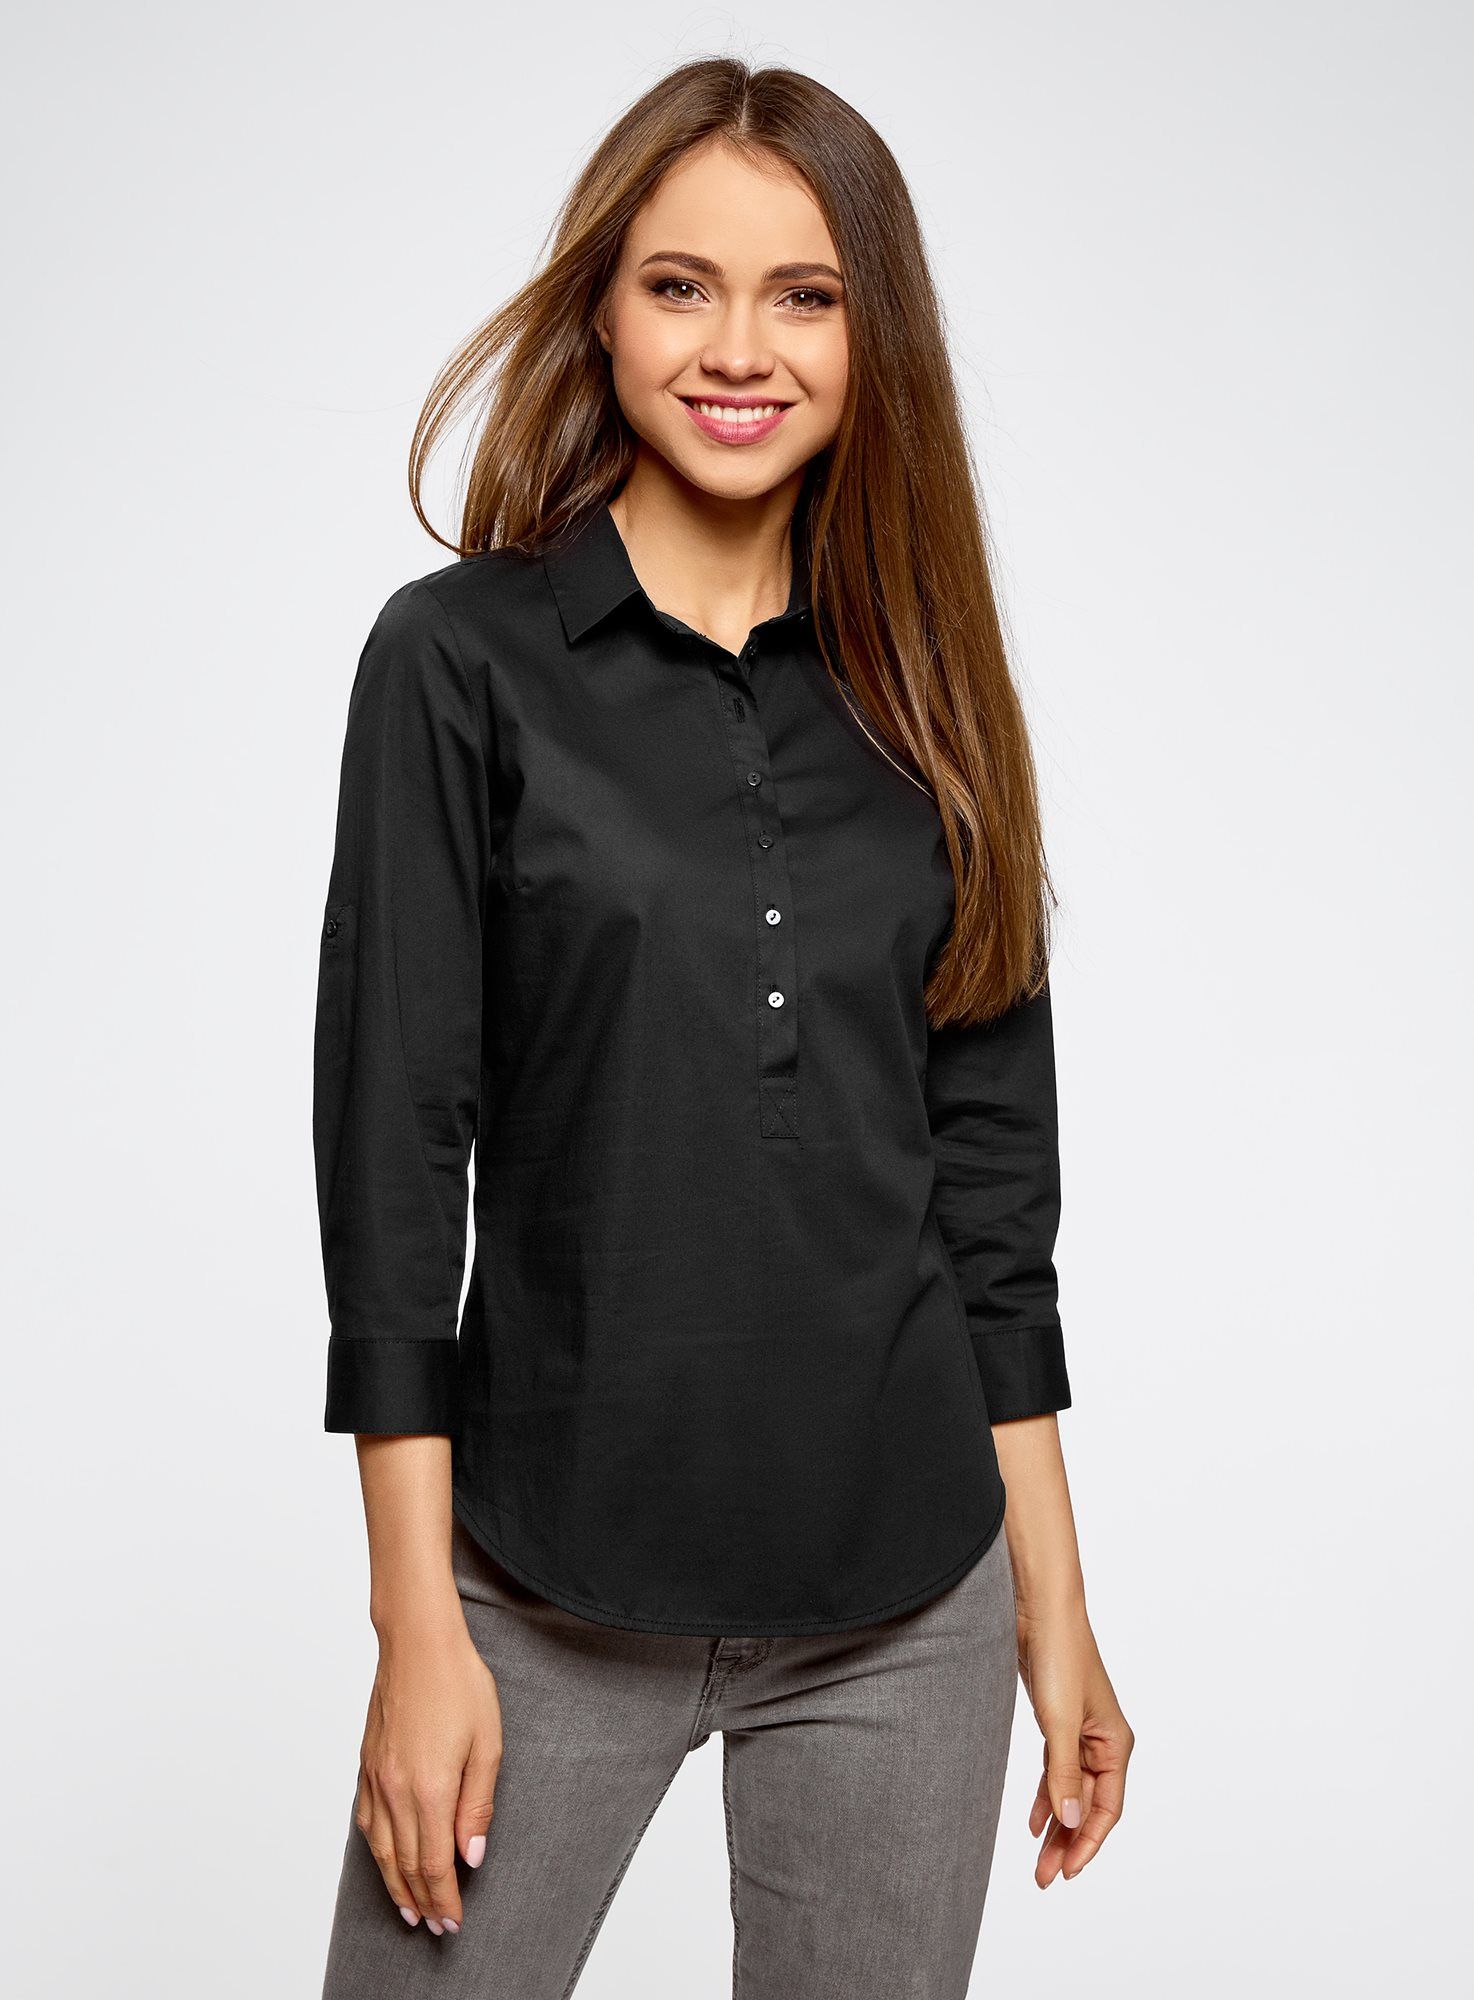 Черная блузка с длинным рукавом. Оджи черная рубашка женская. Блузка oodji черная 3/4. Чёрная блузка женская. Классическая блузка женская.